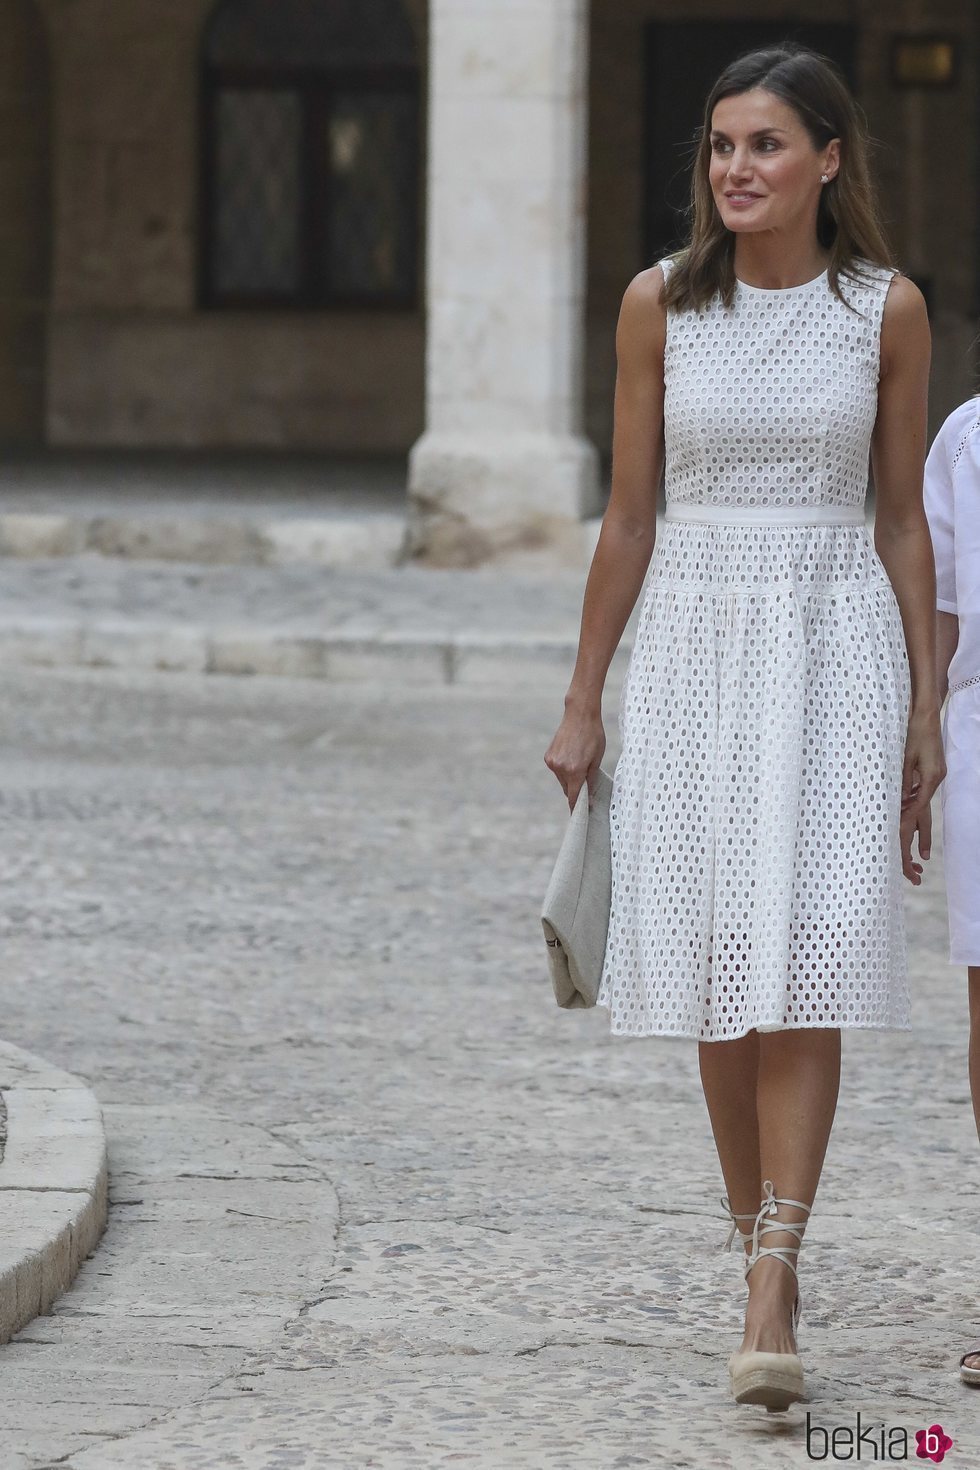 La Reina Letizia en el Palacio de La Almudaina en su posado de verano 2018 en Mallorca